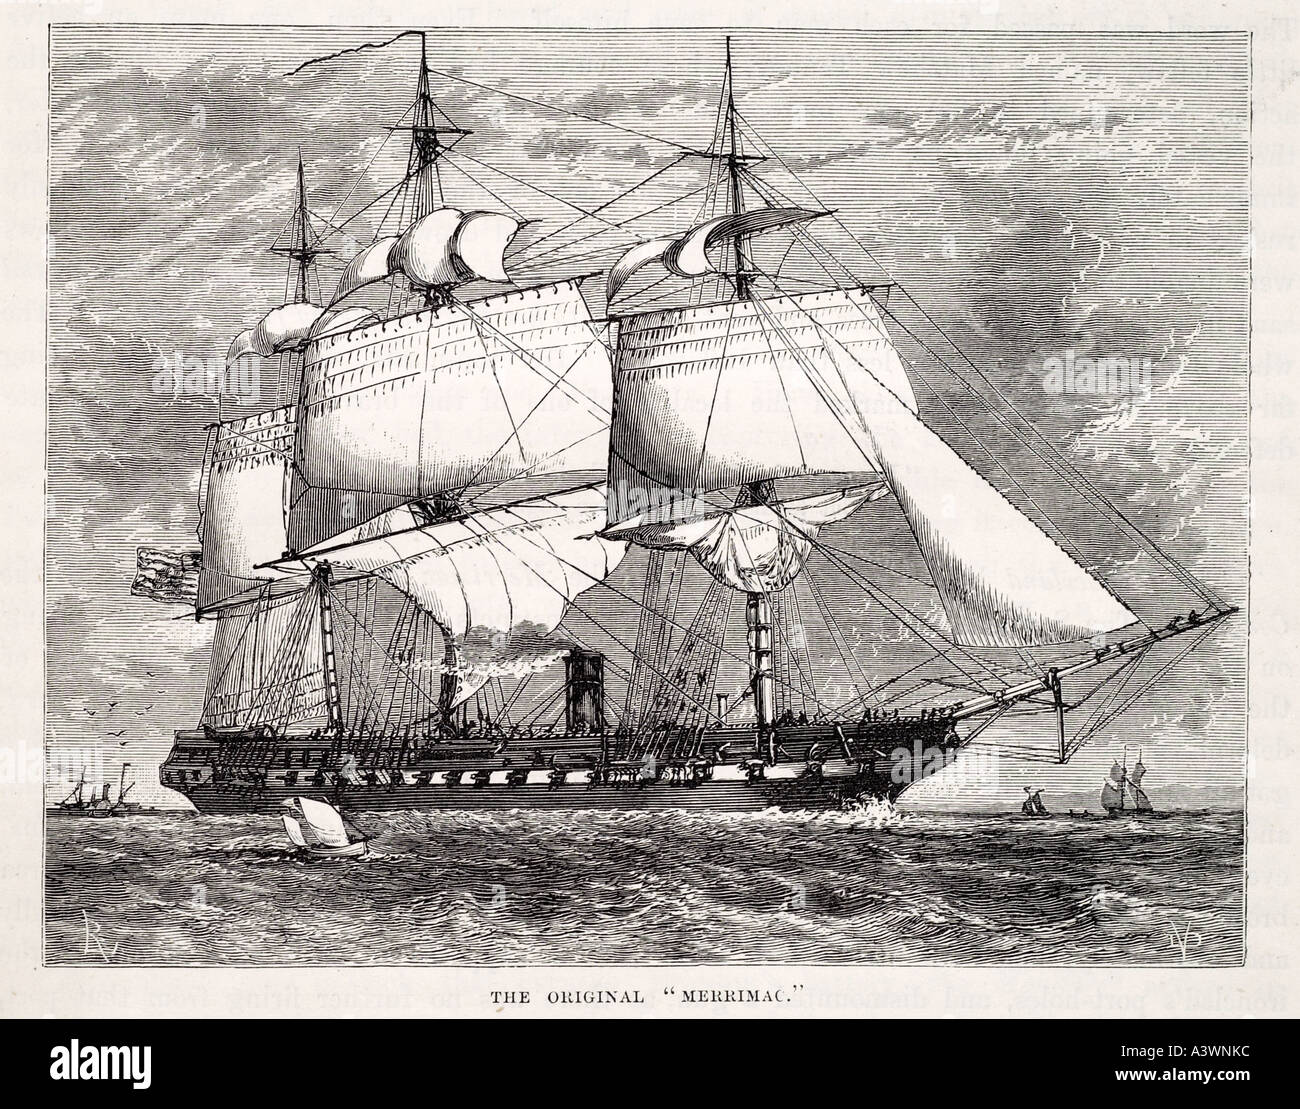 Merrimac Fregatte vor vor Umstellung auf Eisen gekleidet Konföderierten Krieg Segel Mast Dampf Dampfer Schiff Marine USA Bürgerkrieg marine marit Stockfoto